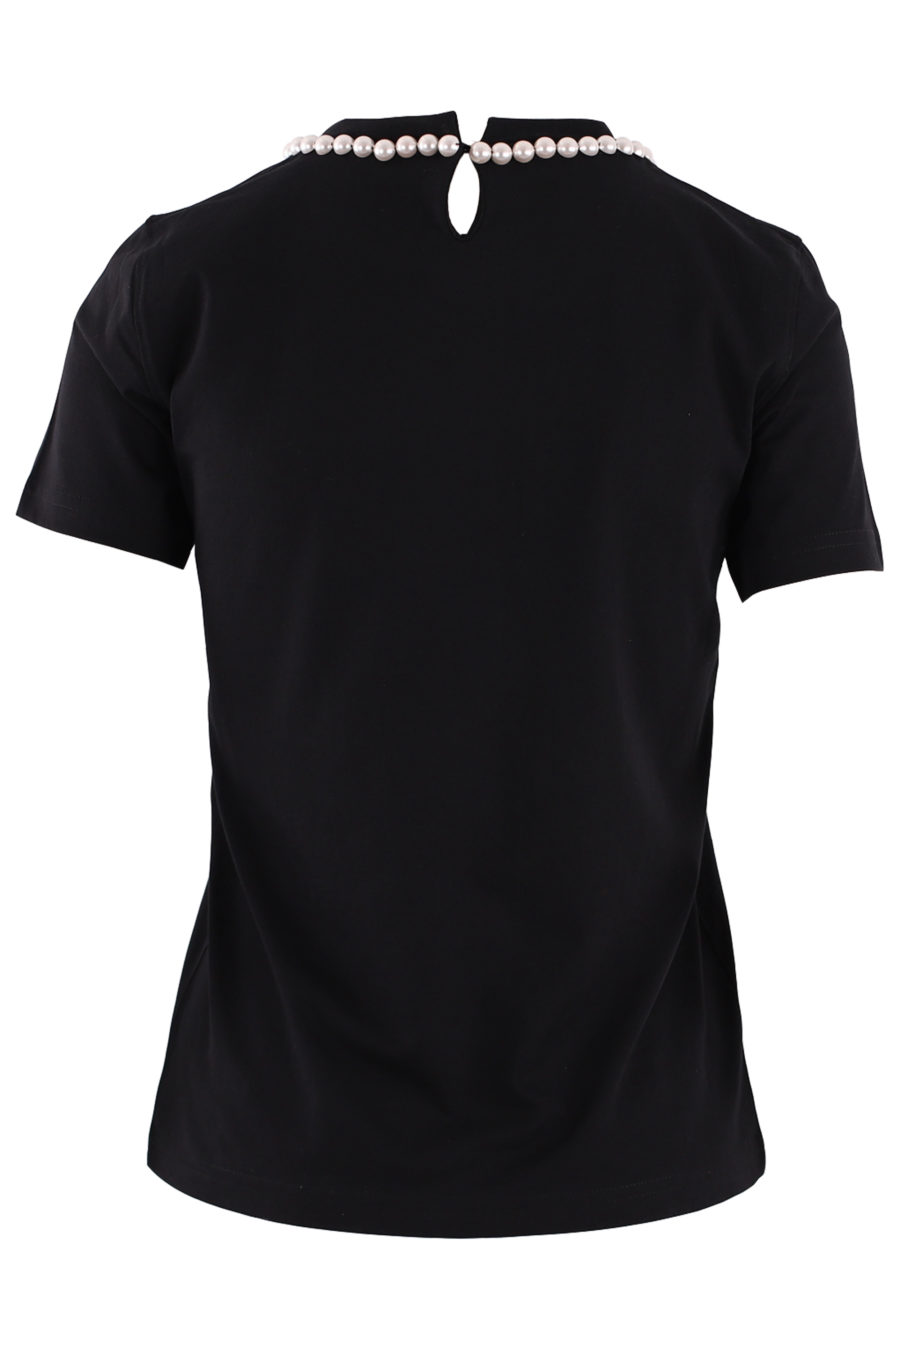 Camiseta negra con perlas - IMG 9560